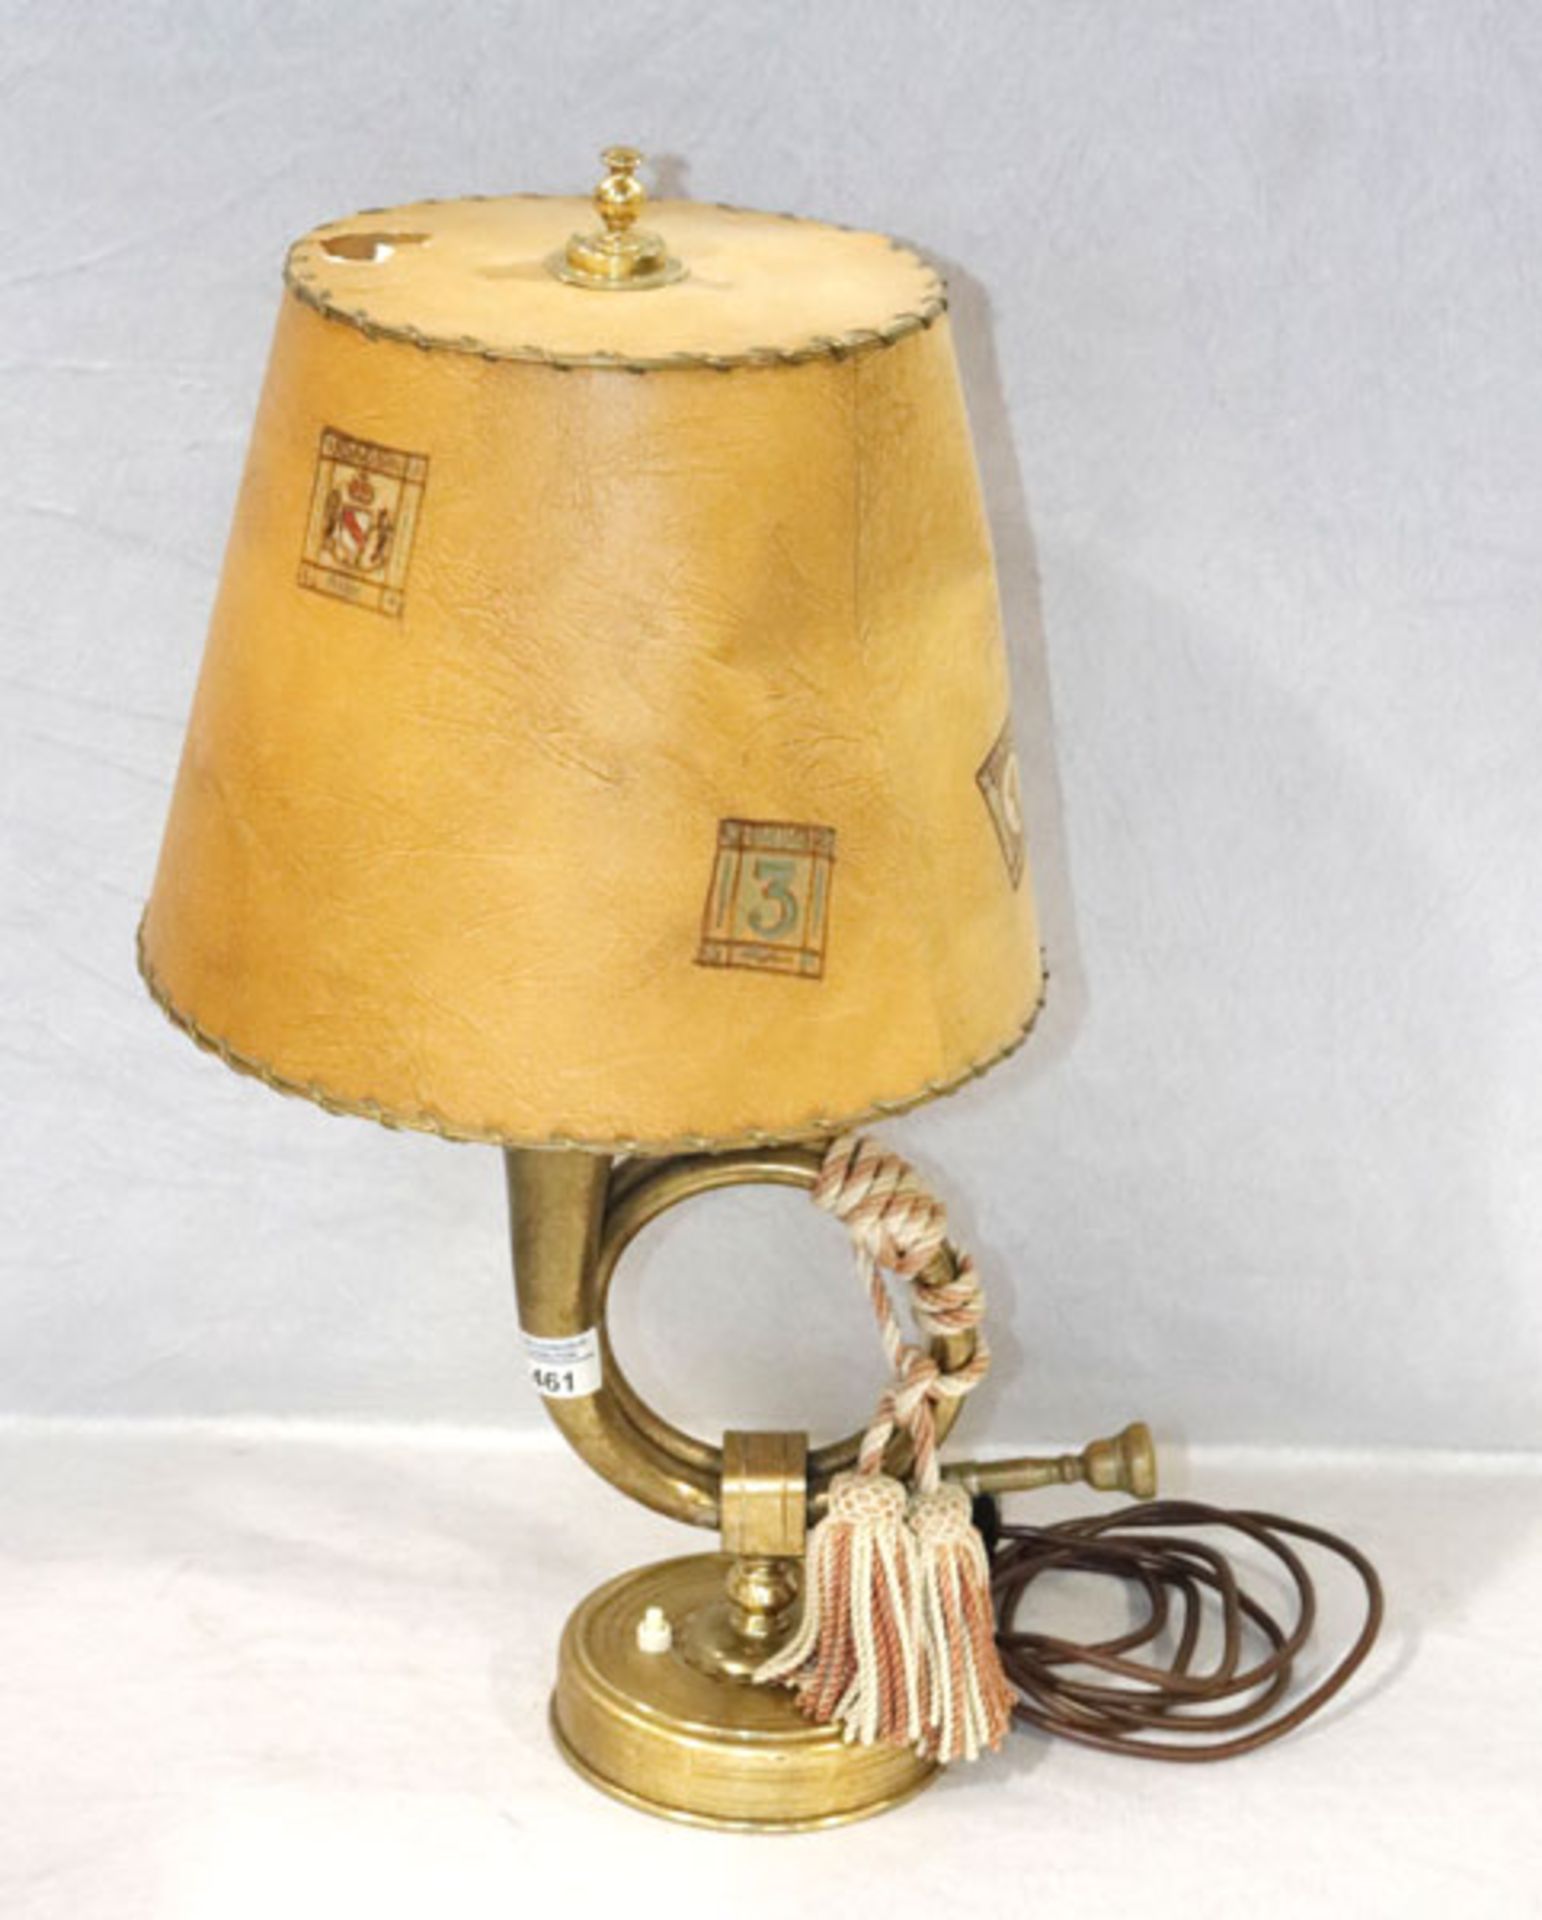 Tischlampe, Posthorn-Lampenfuß mit beigen Schirm, beschädigt, H 58 cm, D 36 cm, Funktion nicht